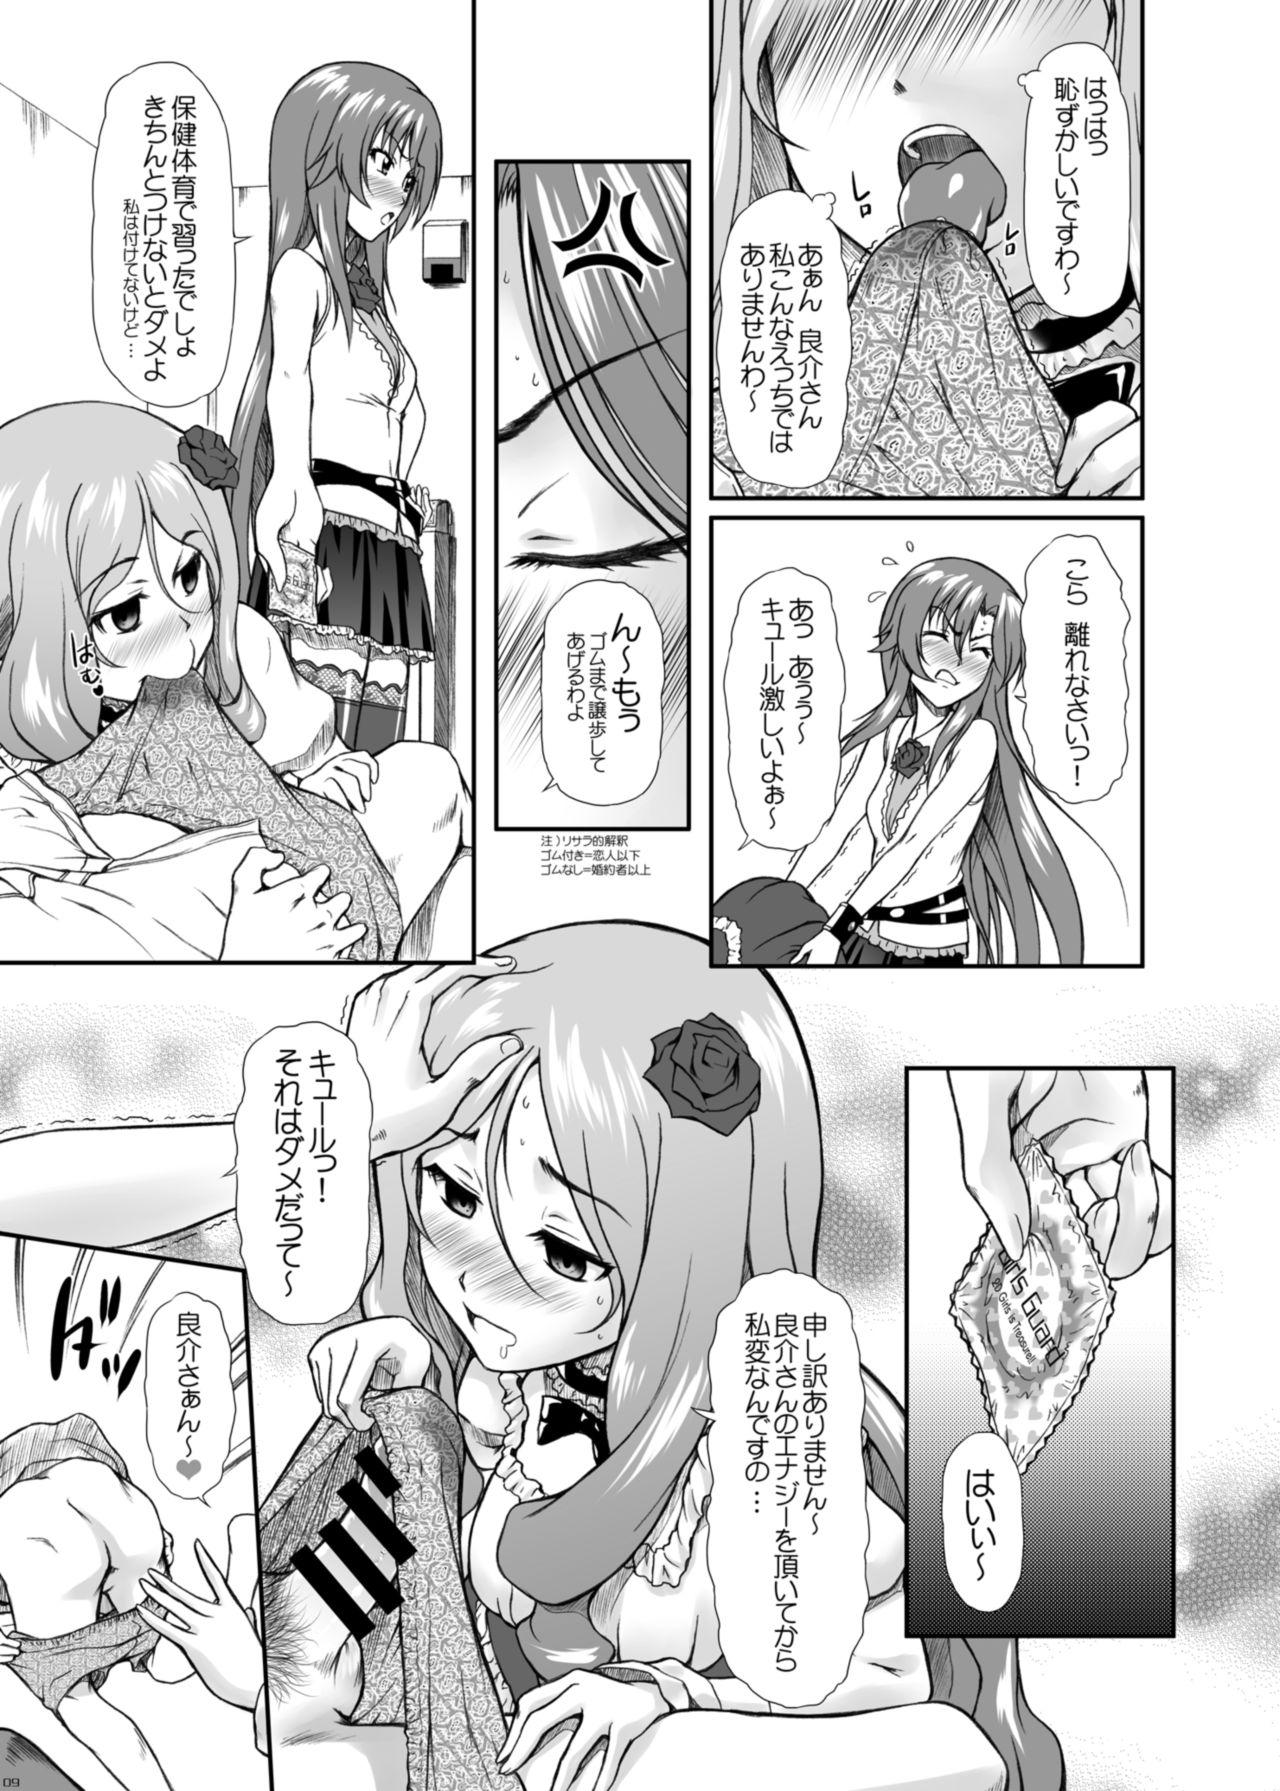 Butt Risara-san no Kyoukai Sen - Dakara boku wa h ga dekinai 3some - Page 7